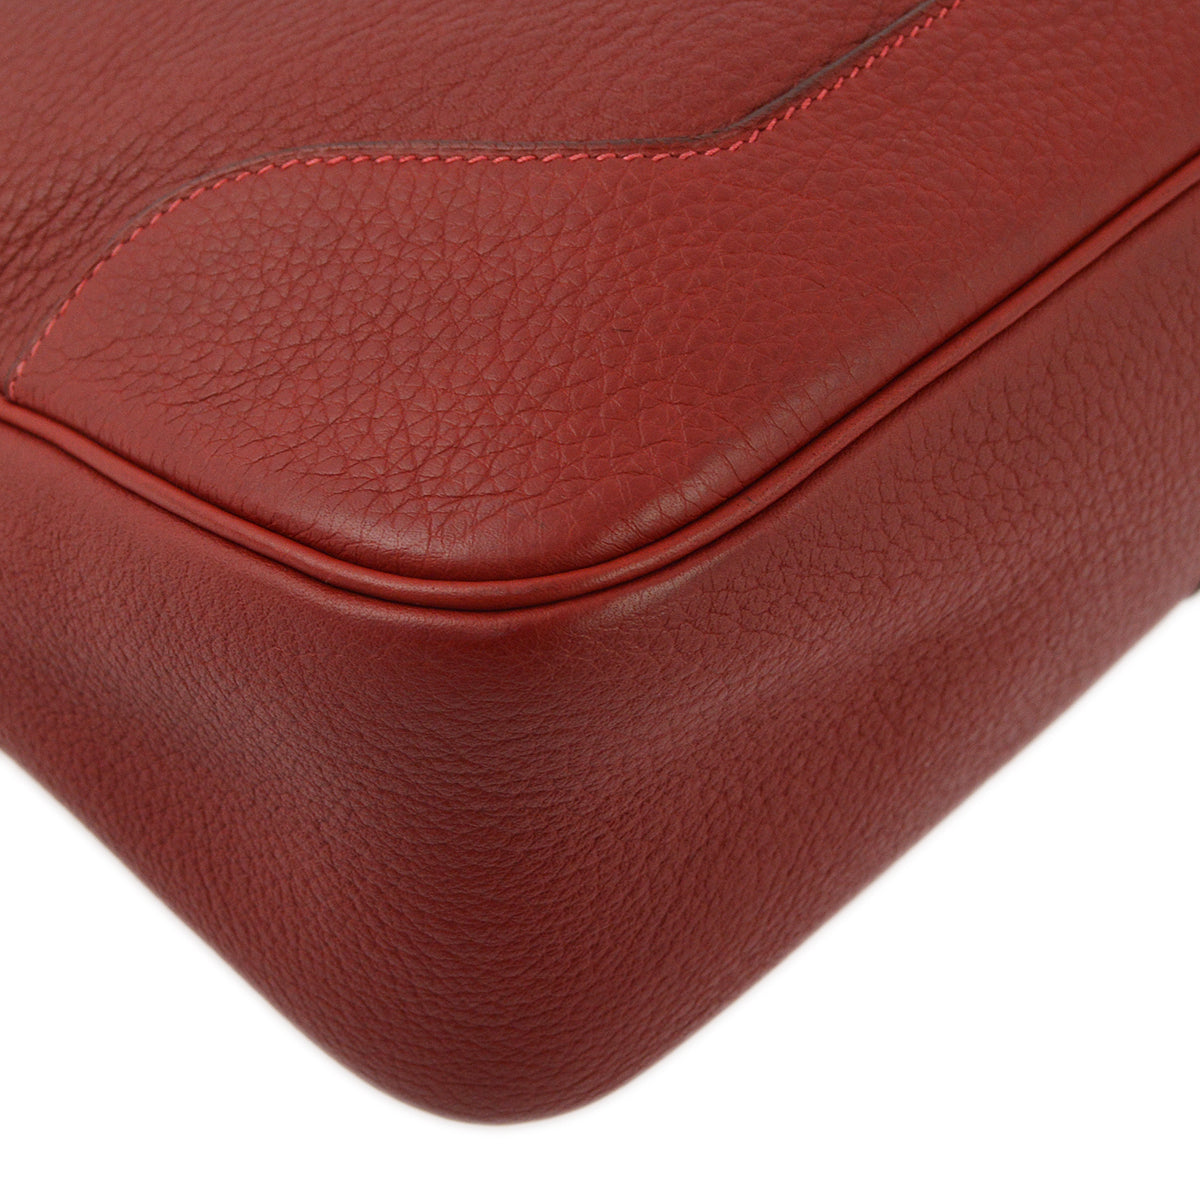 Hermes Red Taurillon Clemence Trim 31 Shoulder Bag